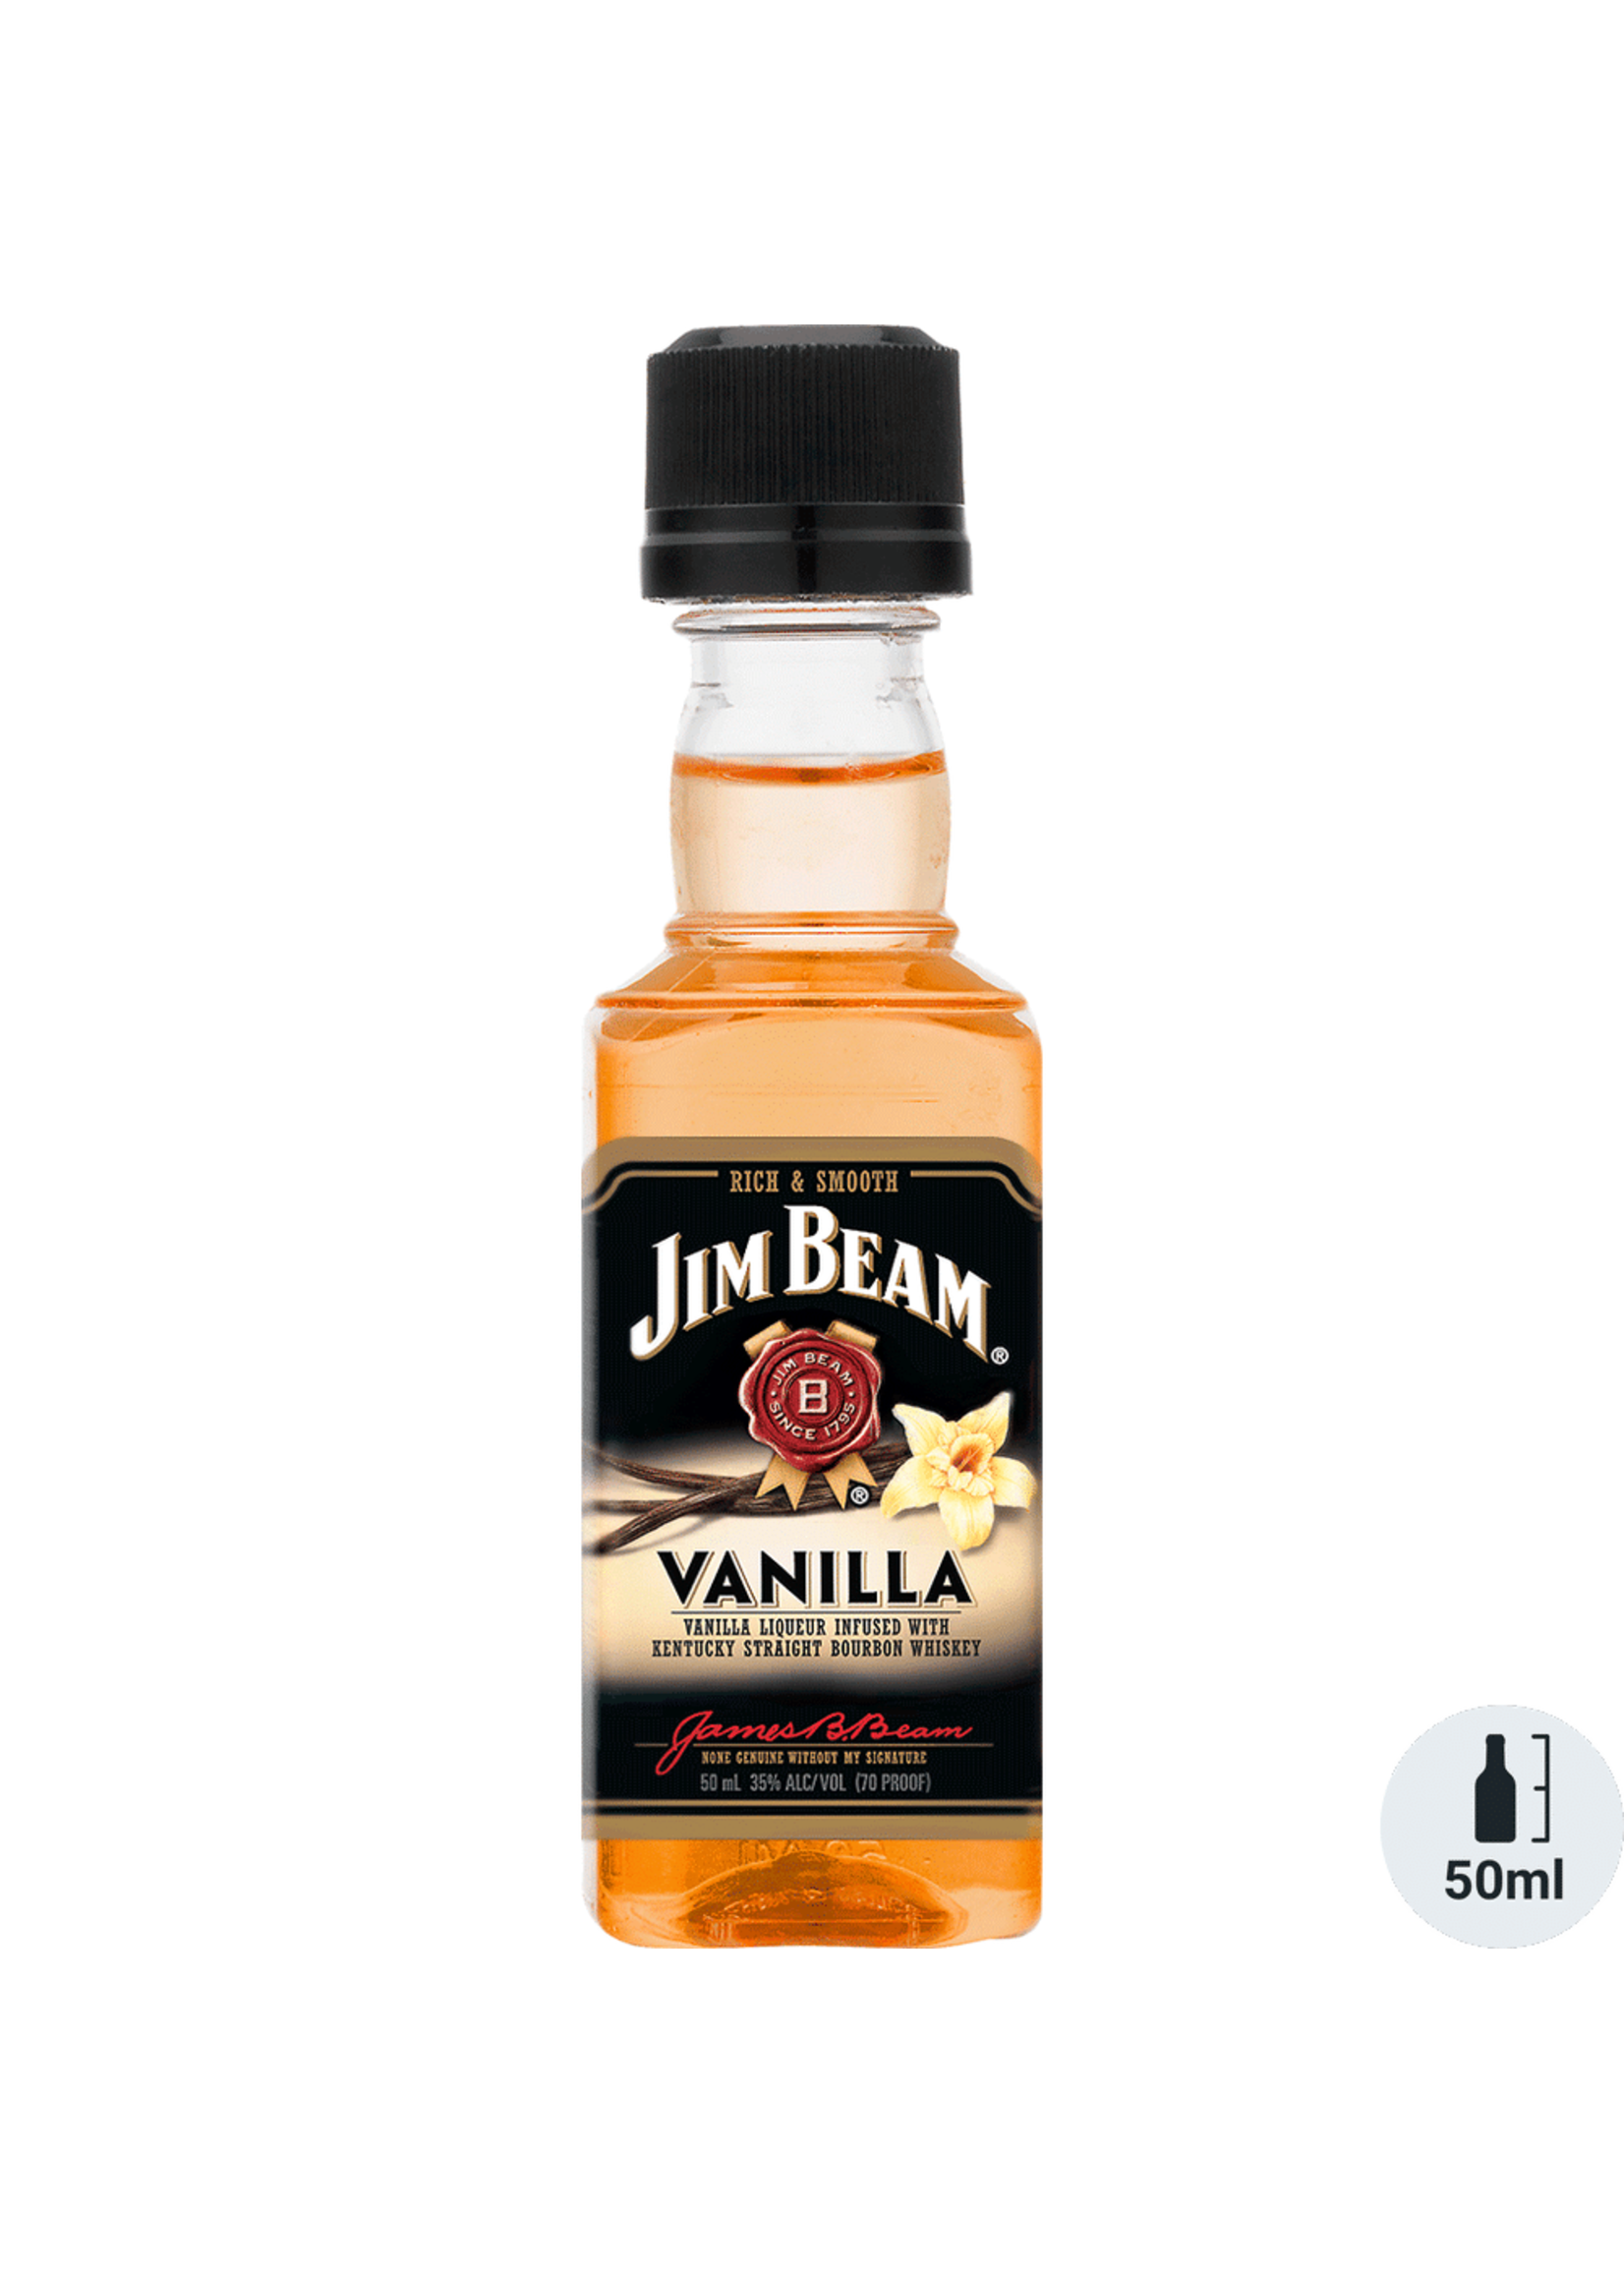 Jim Beam Jim Beam Vanilla Flavored Whiskey 65Proof Pet 50ml